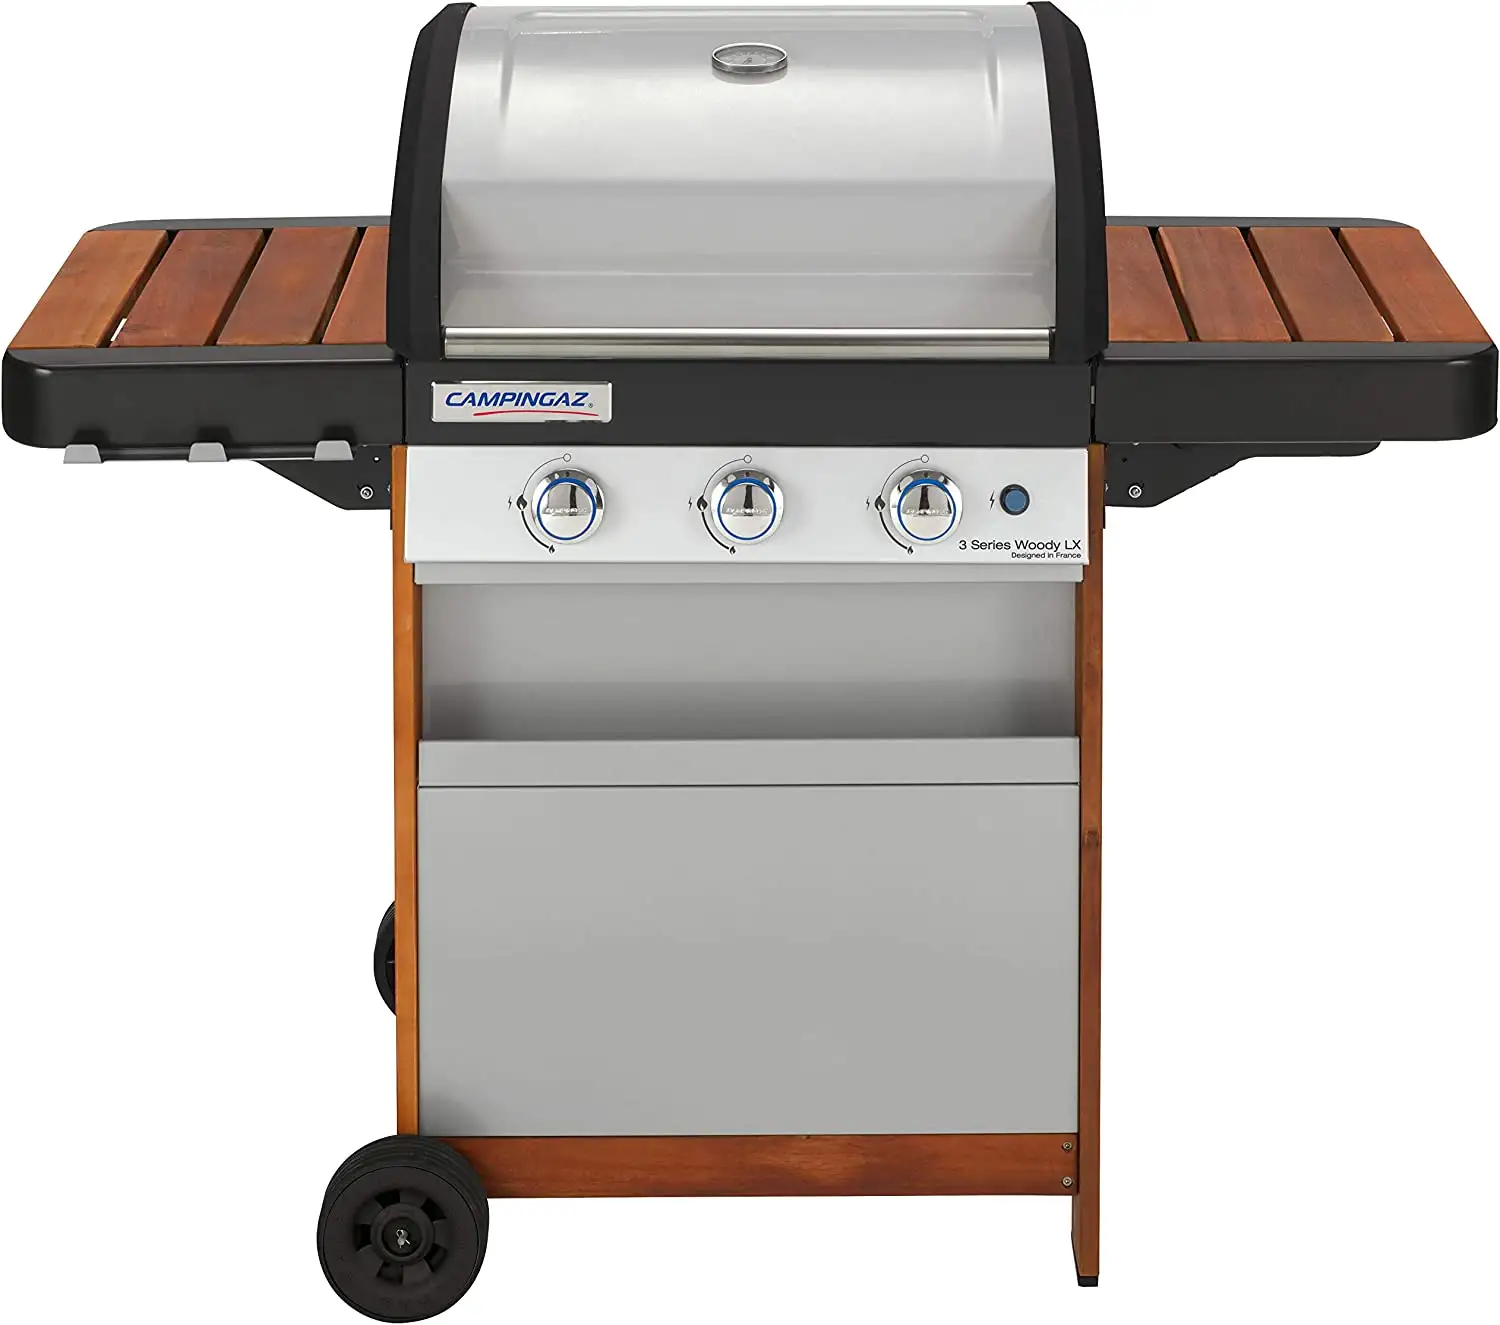 campingaz 3 series woody lx - barbecue a gas, 3 bruciatori, modello 2000015632 bianco donna